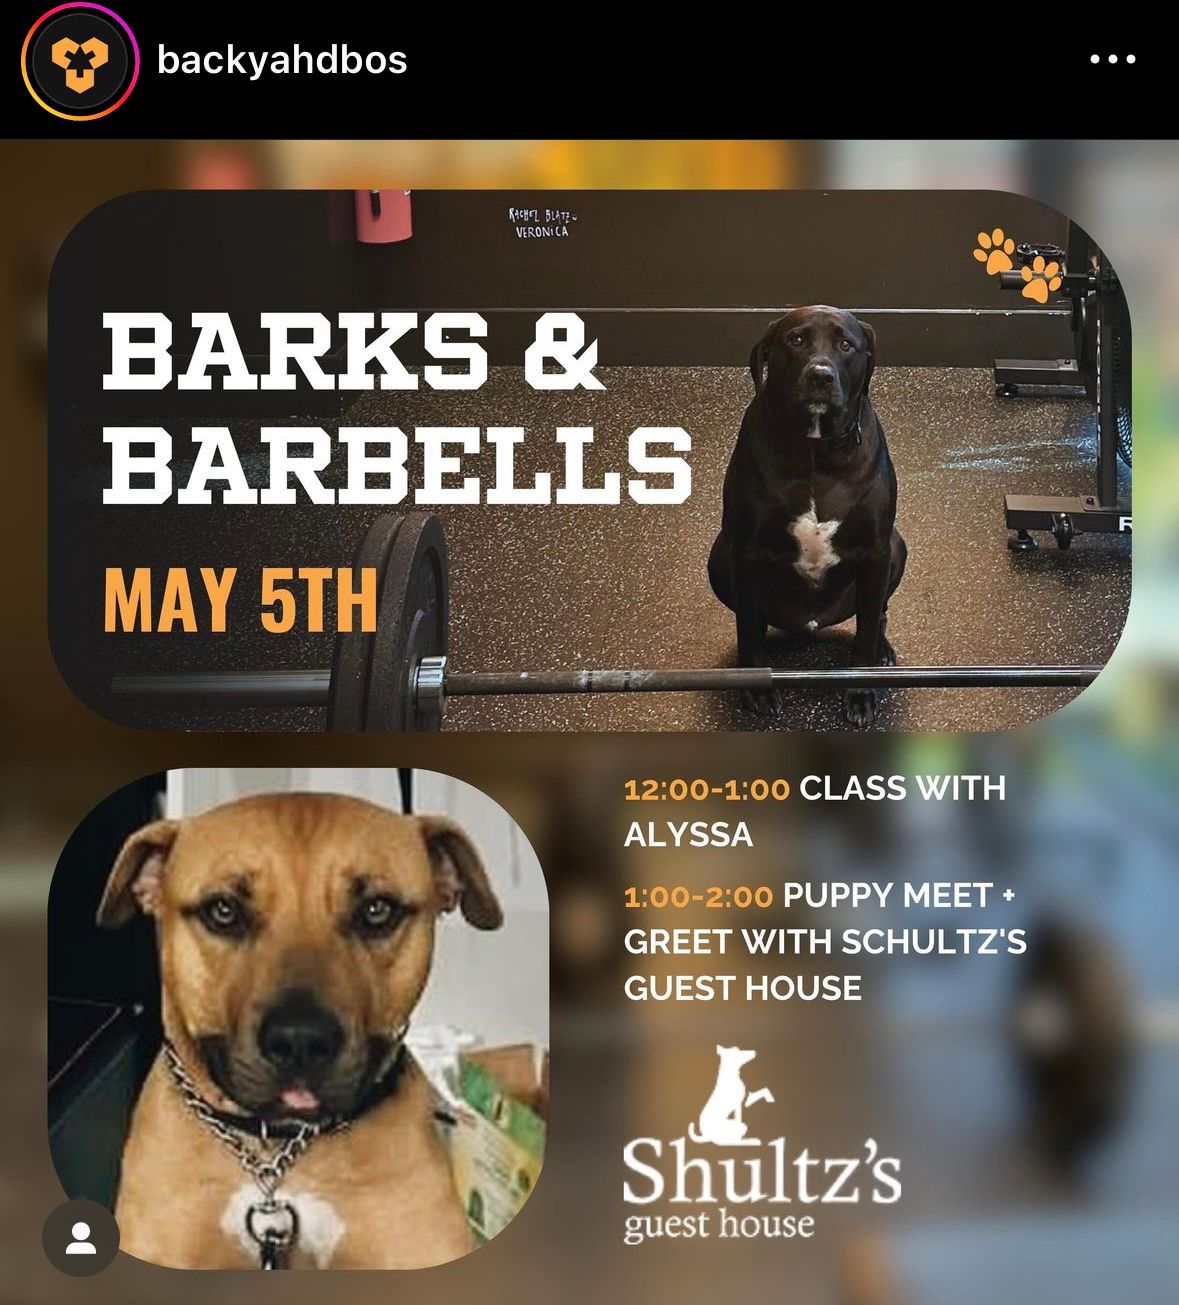 Barks & Barbells